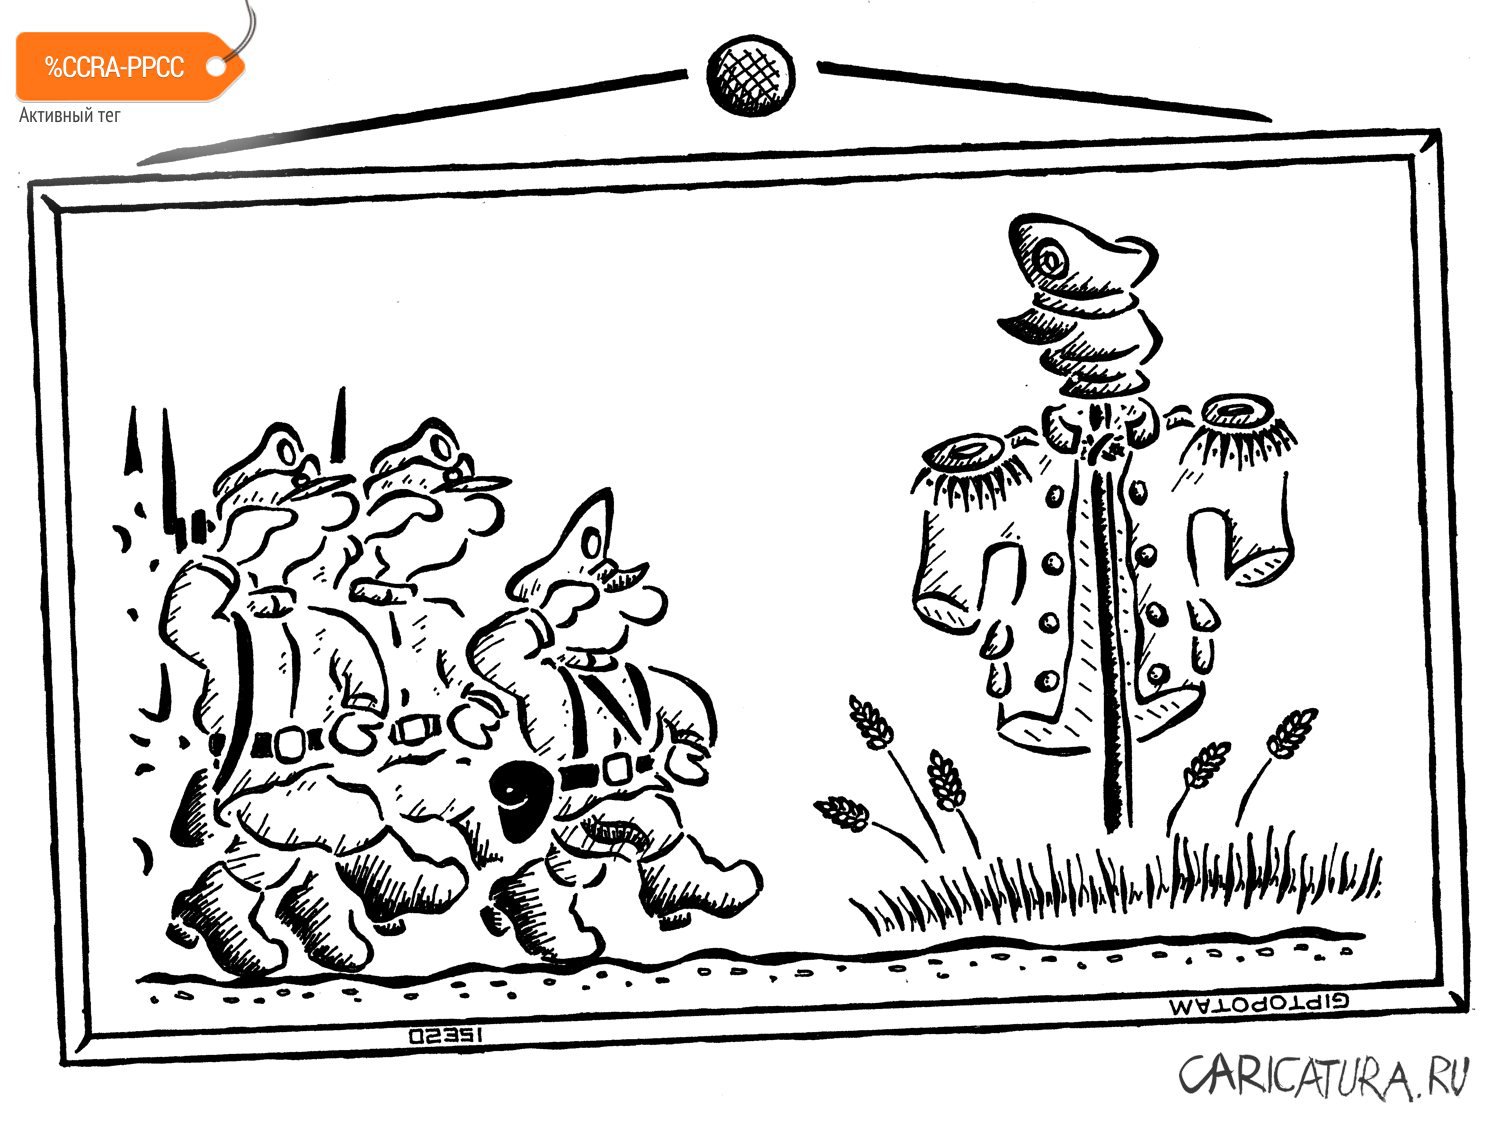 Карикатура "Ваше Высоко...огородие!", Александр Евангелистов